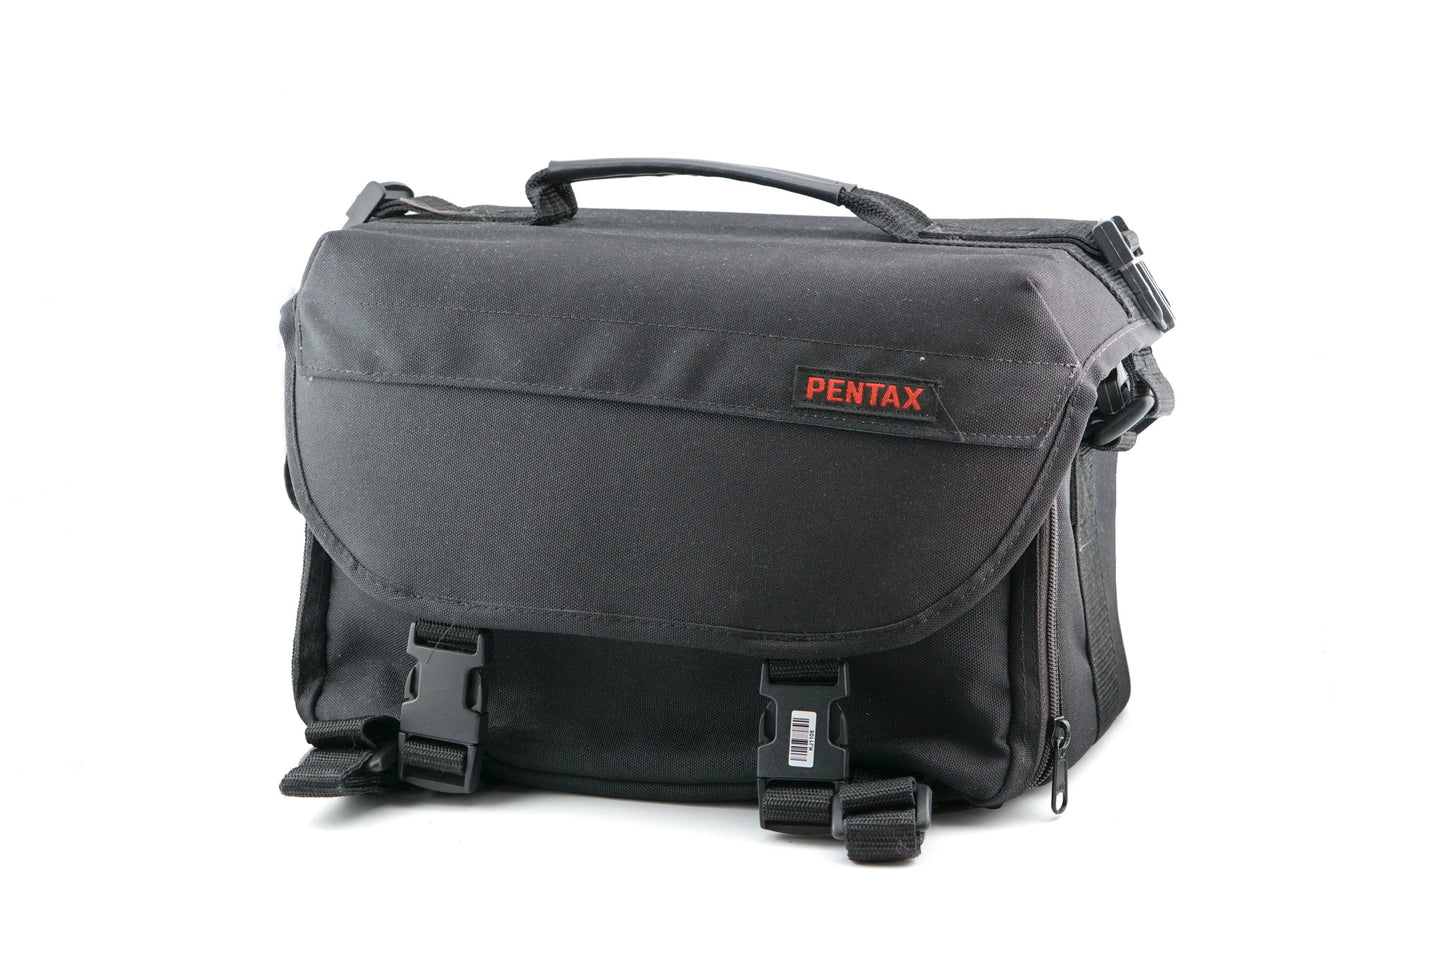 Pentax Camera Bag - Accessory